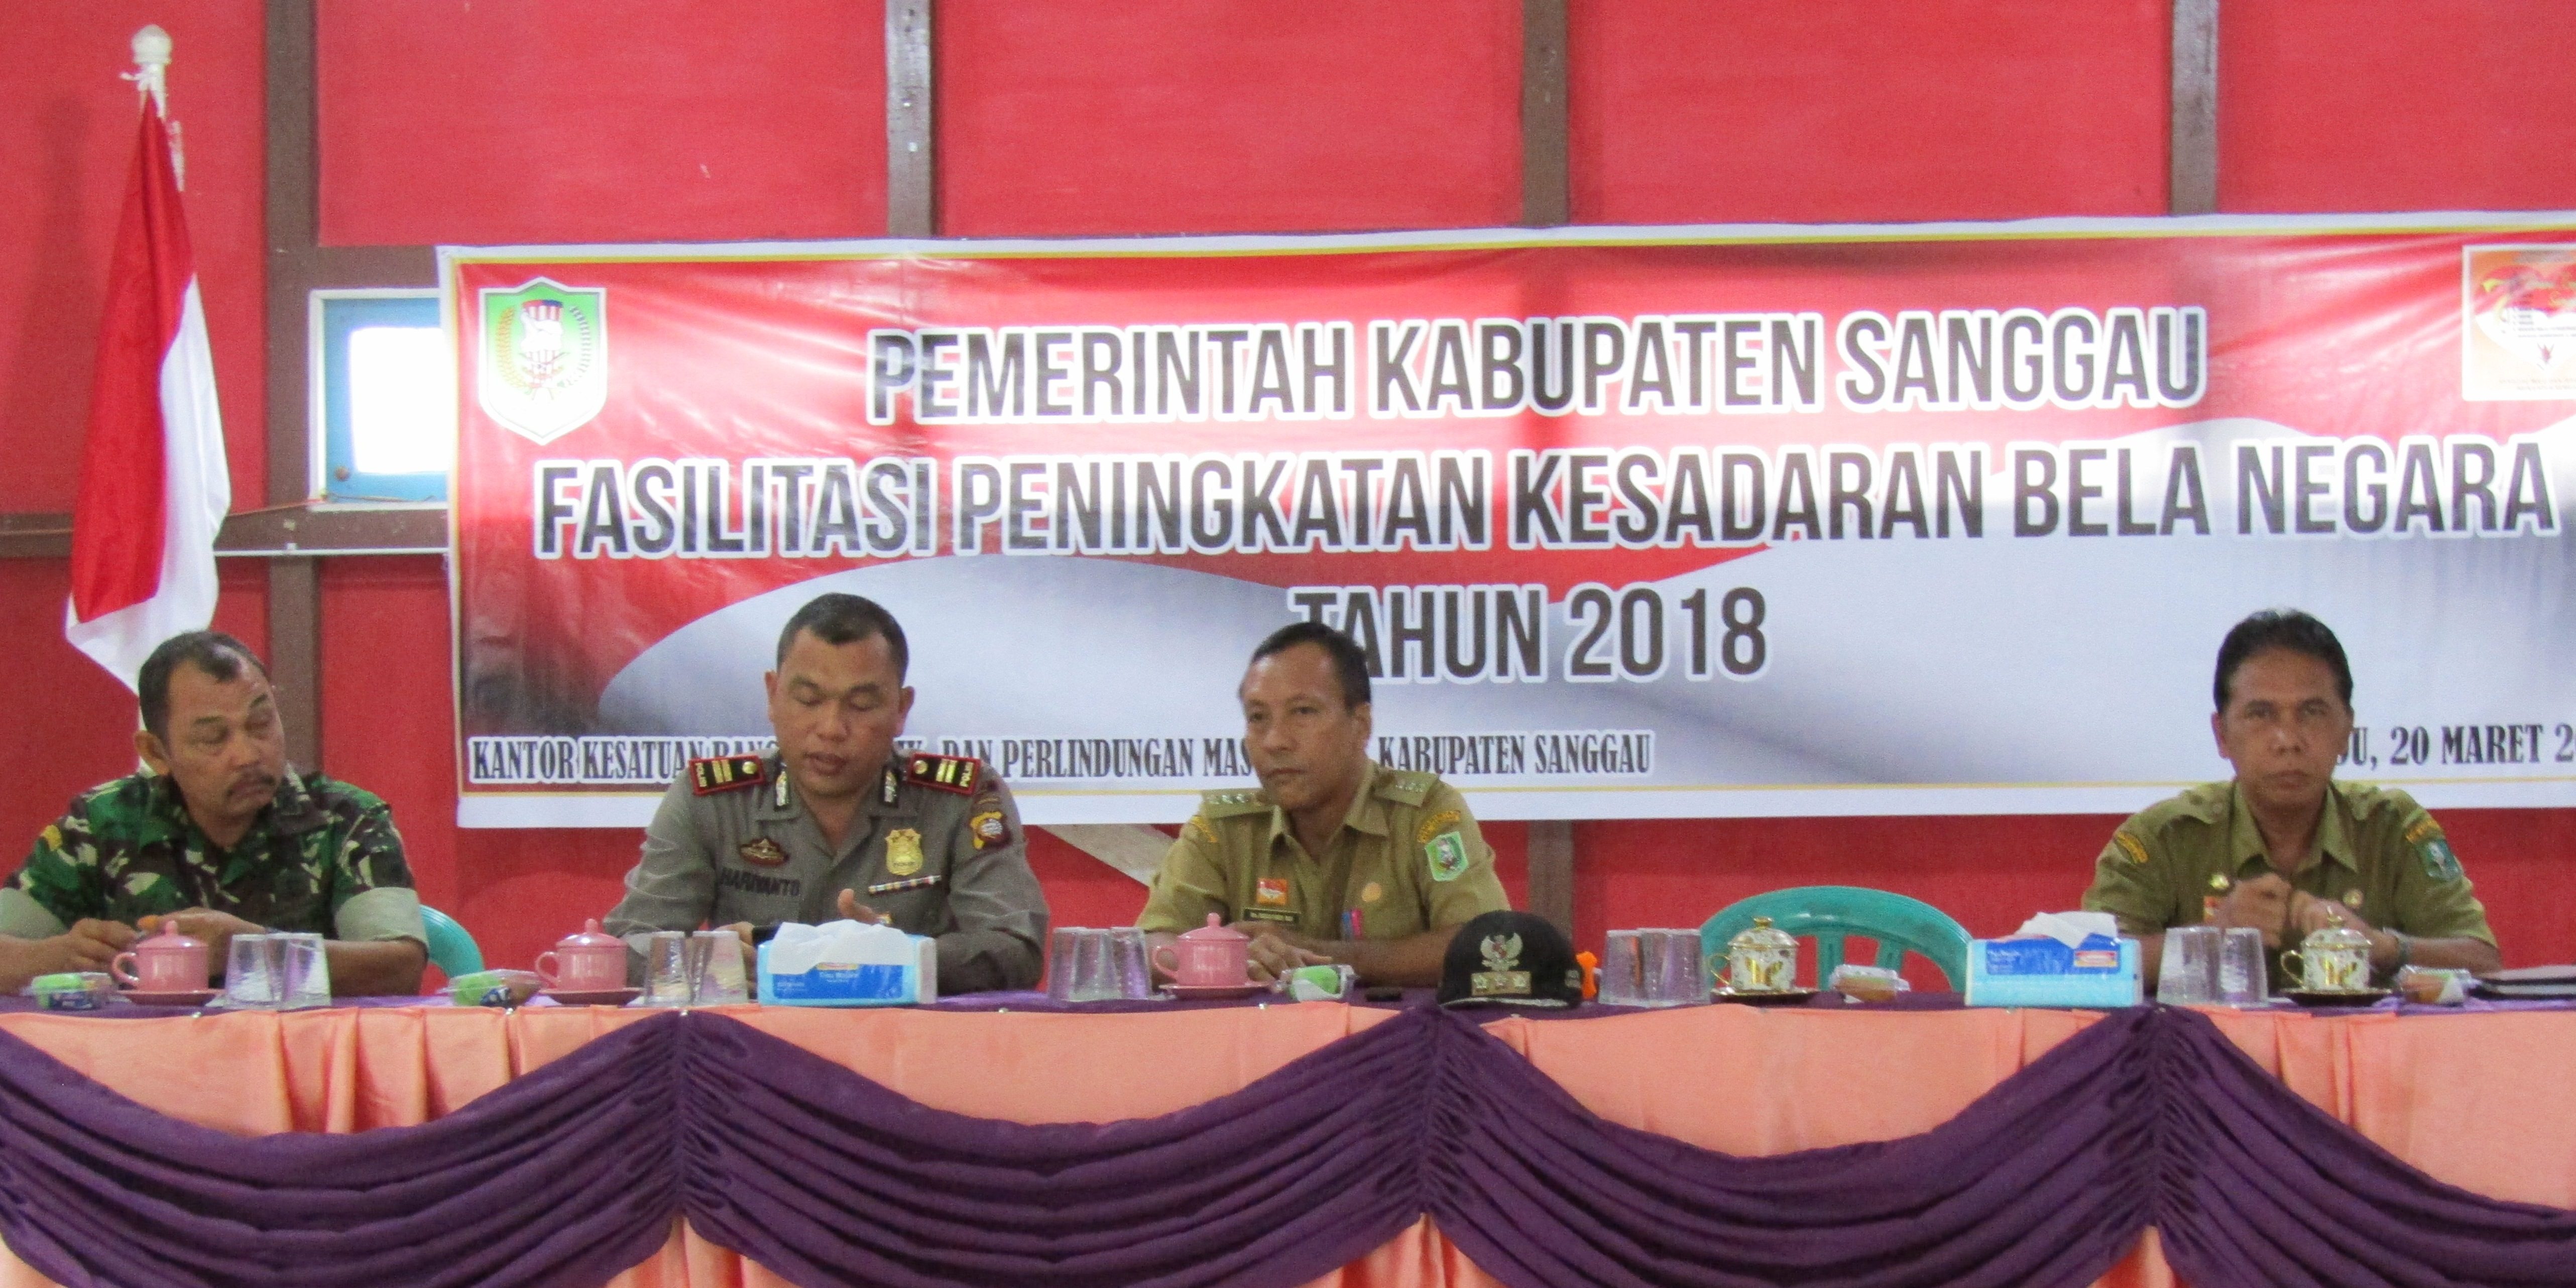 Fasilitasi Peningkatan Kesadaran Bela Negara di Kabupaten Sanggau Tahun 2018